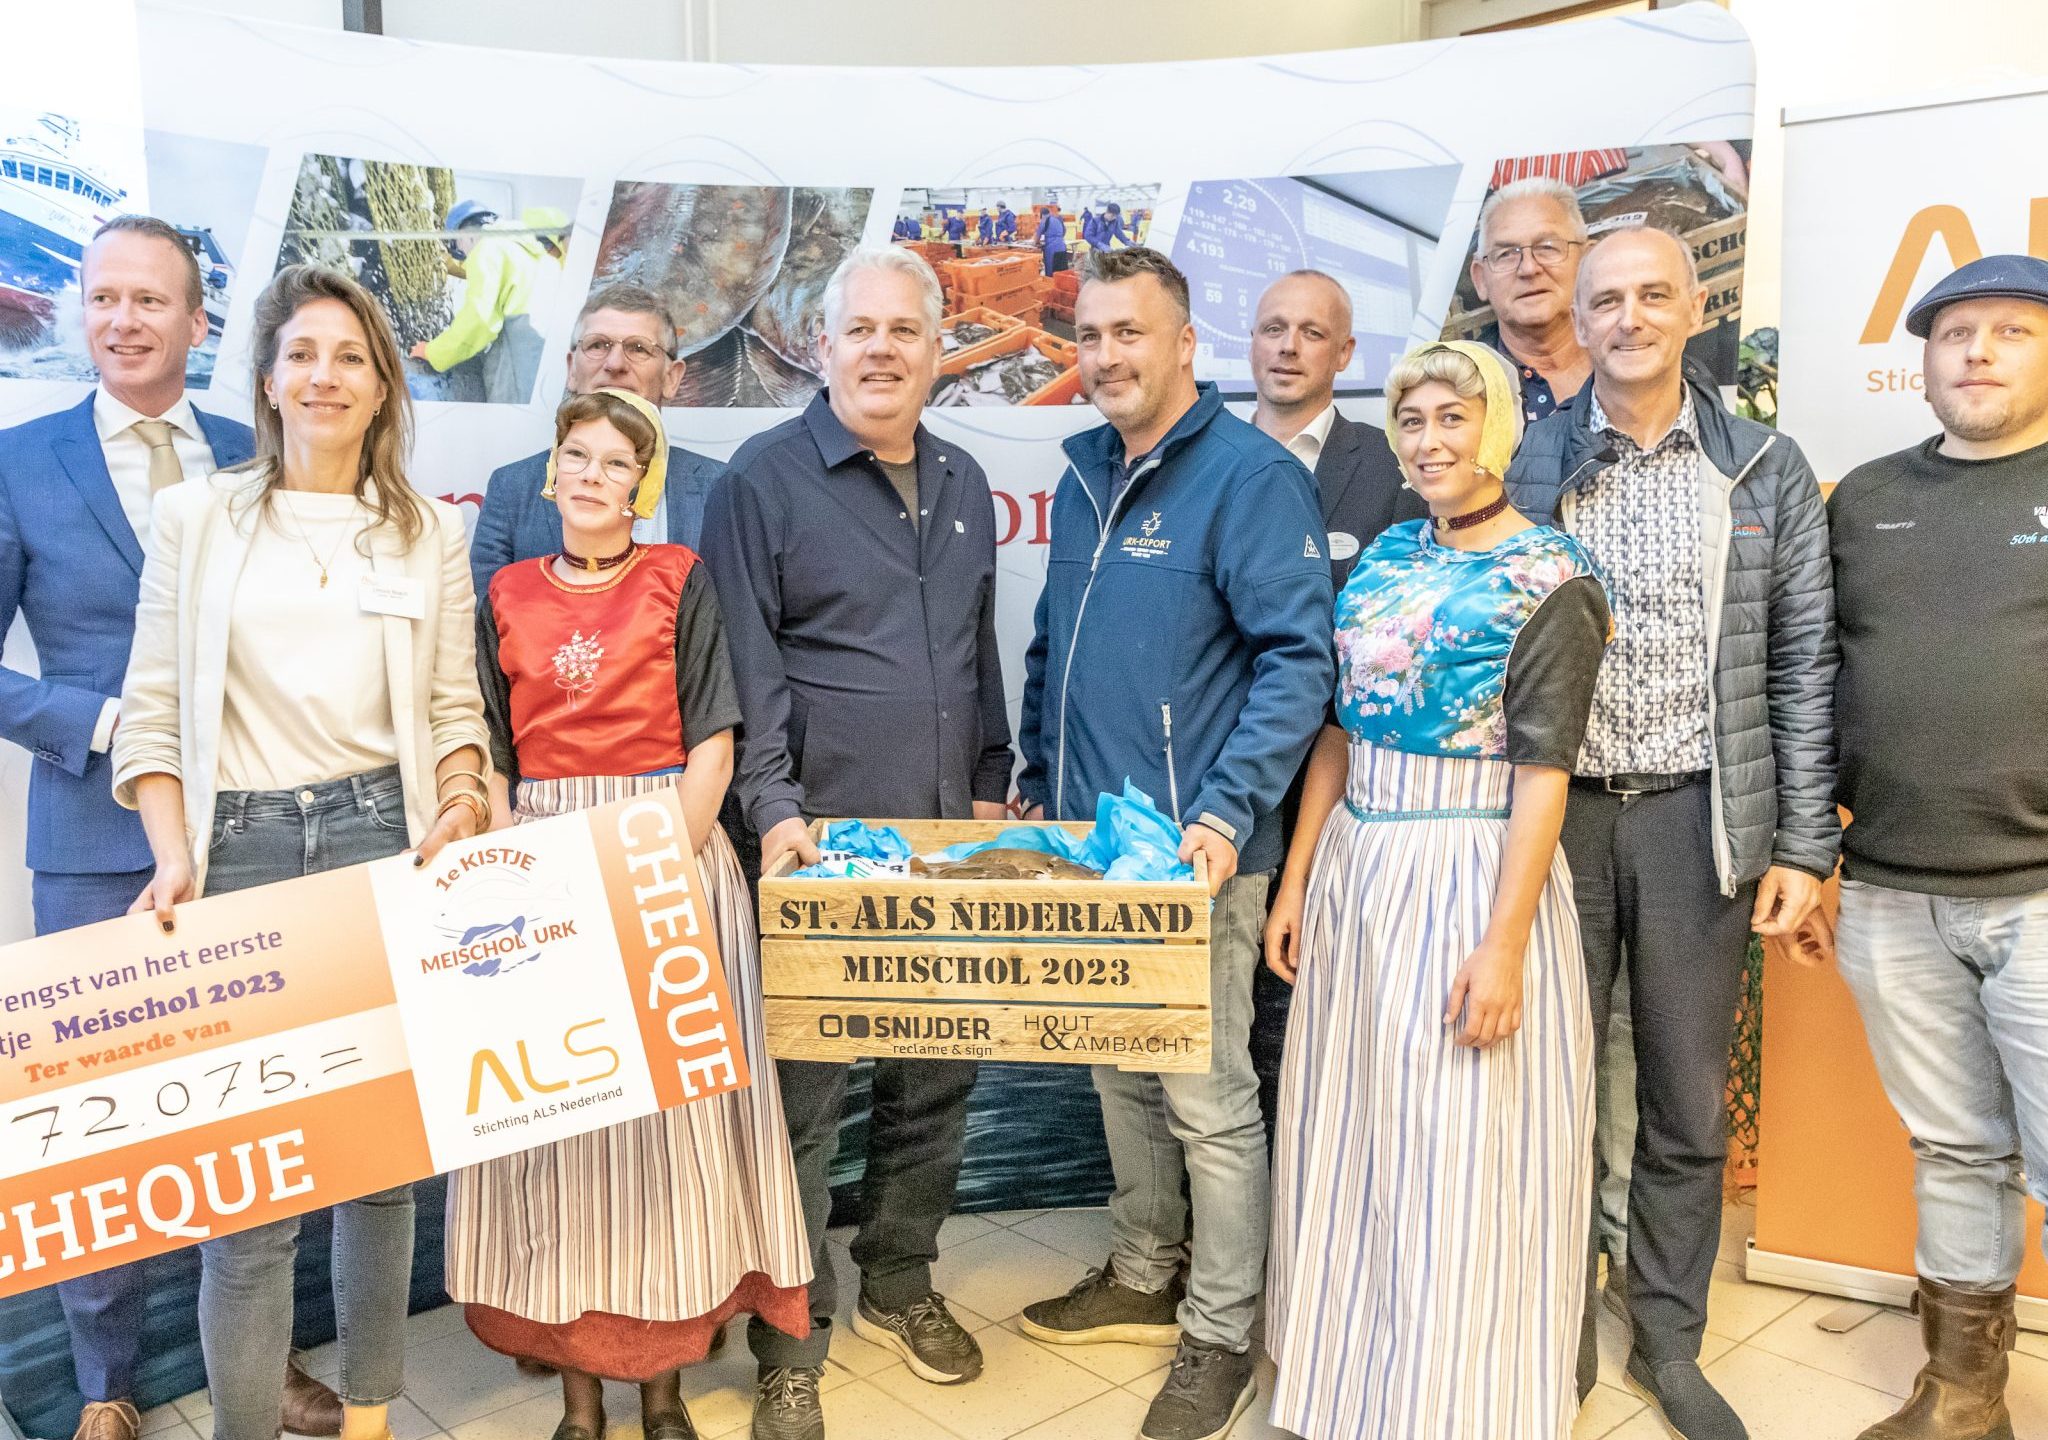 Limore Noach en Thomas Acda nemen namens Stichting ALS Nederland, te midden van bij de veiling betrokken bedrijven en instanties, de cheque in ontvangst.